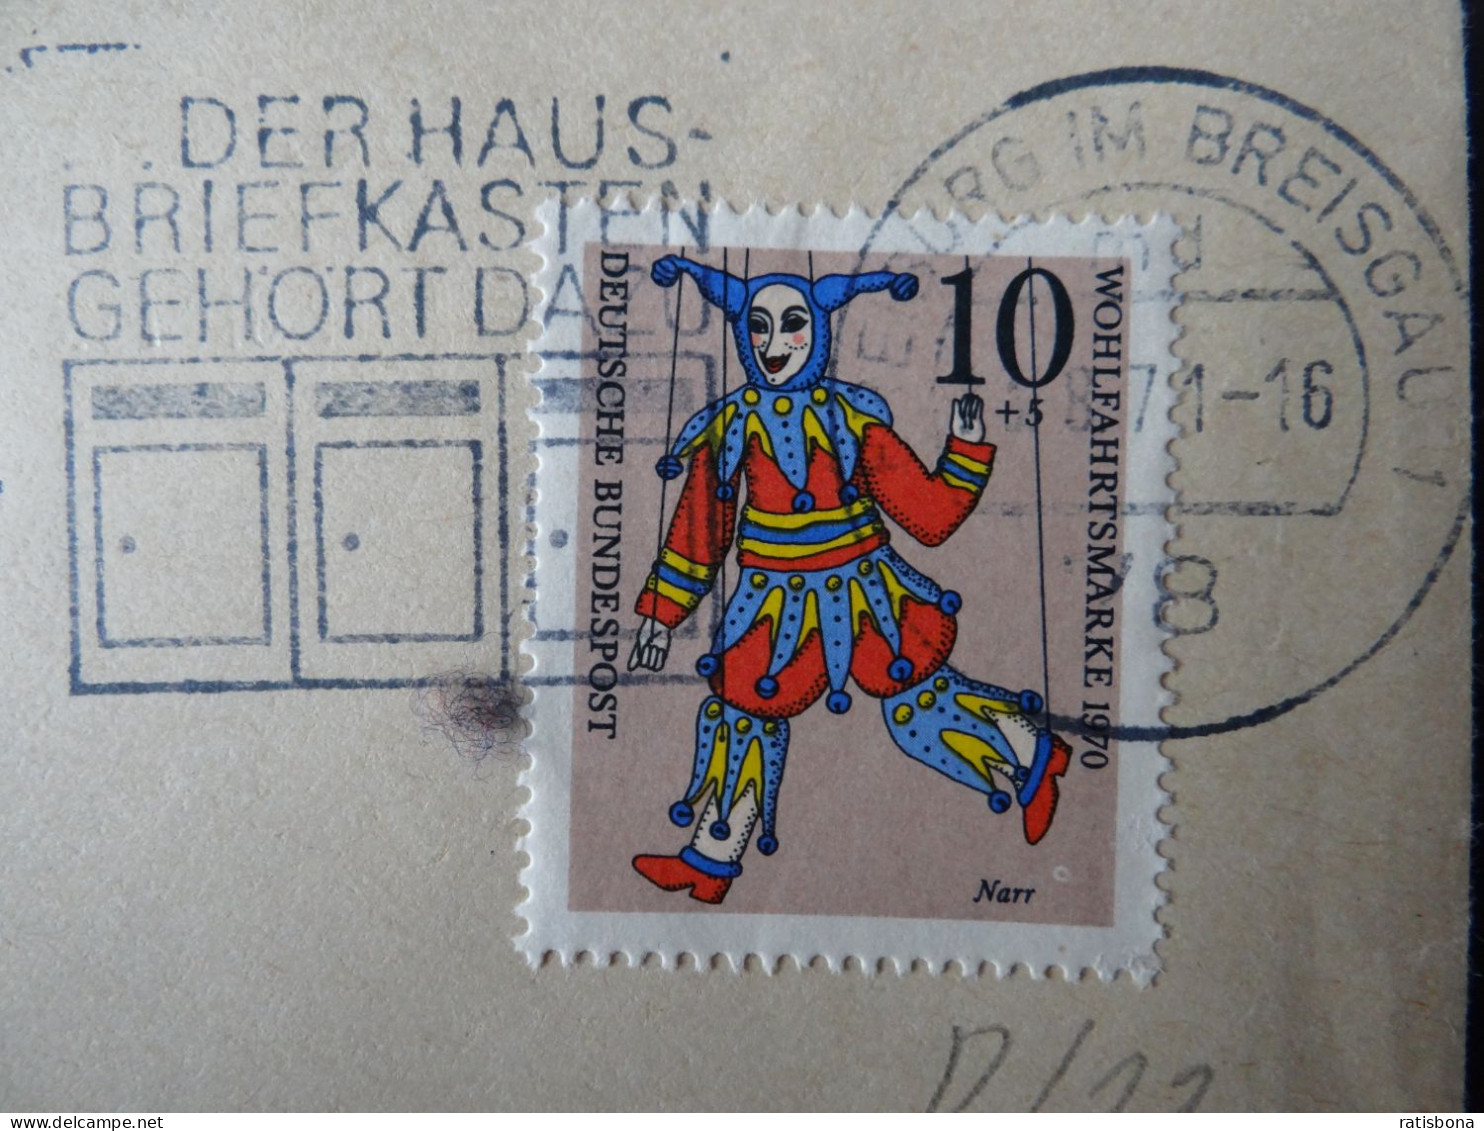 7800 Freiburg I.Breisgau - Der Hausbriefkasten Gehört Dazu - Werbestempel 1971 - Machines à Affranchir (EMA)